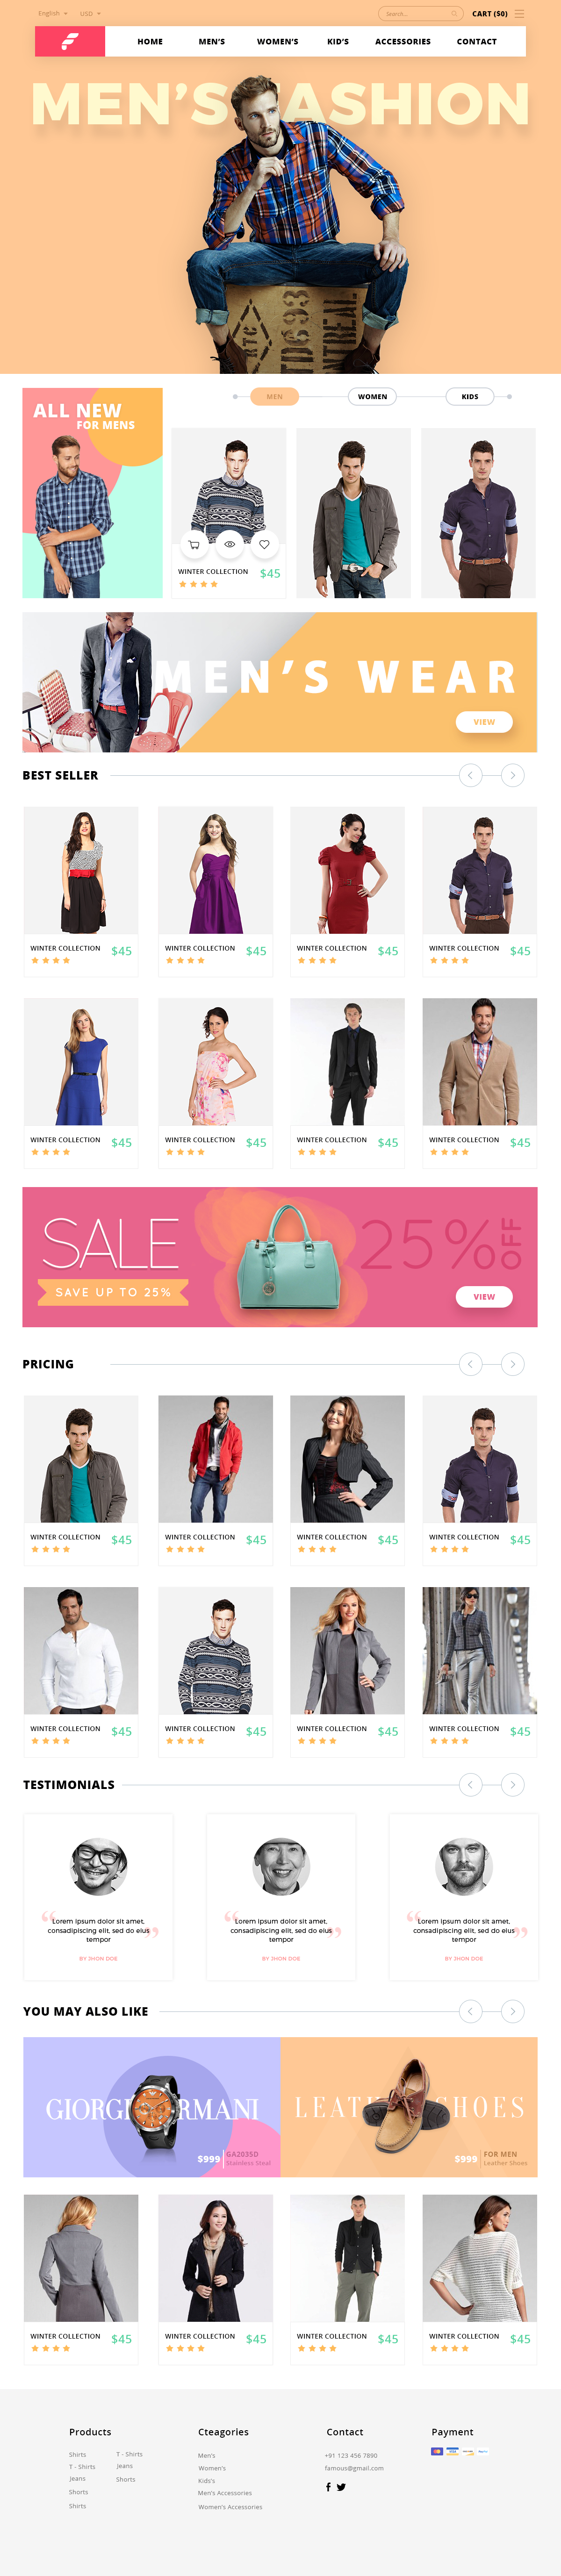 Web color Pastle falt clean Style women men Shopping online material